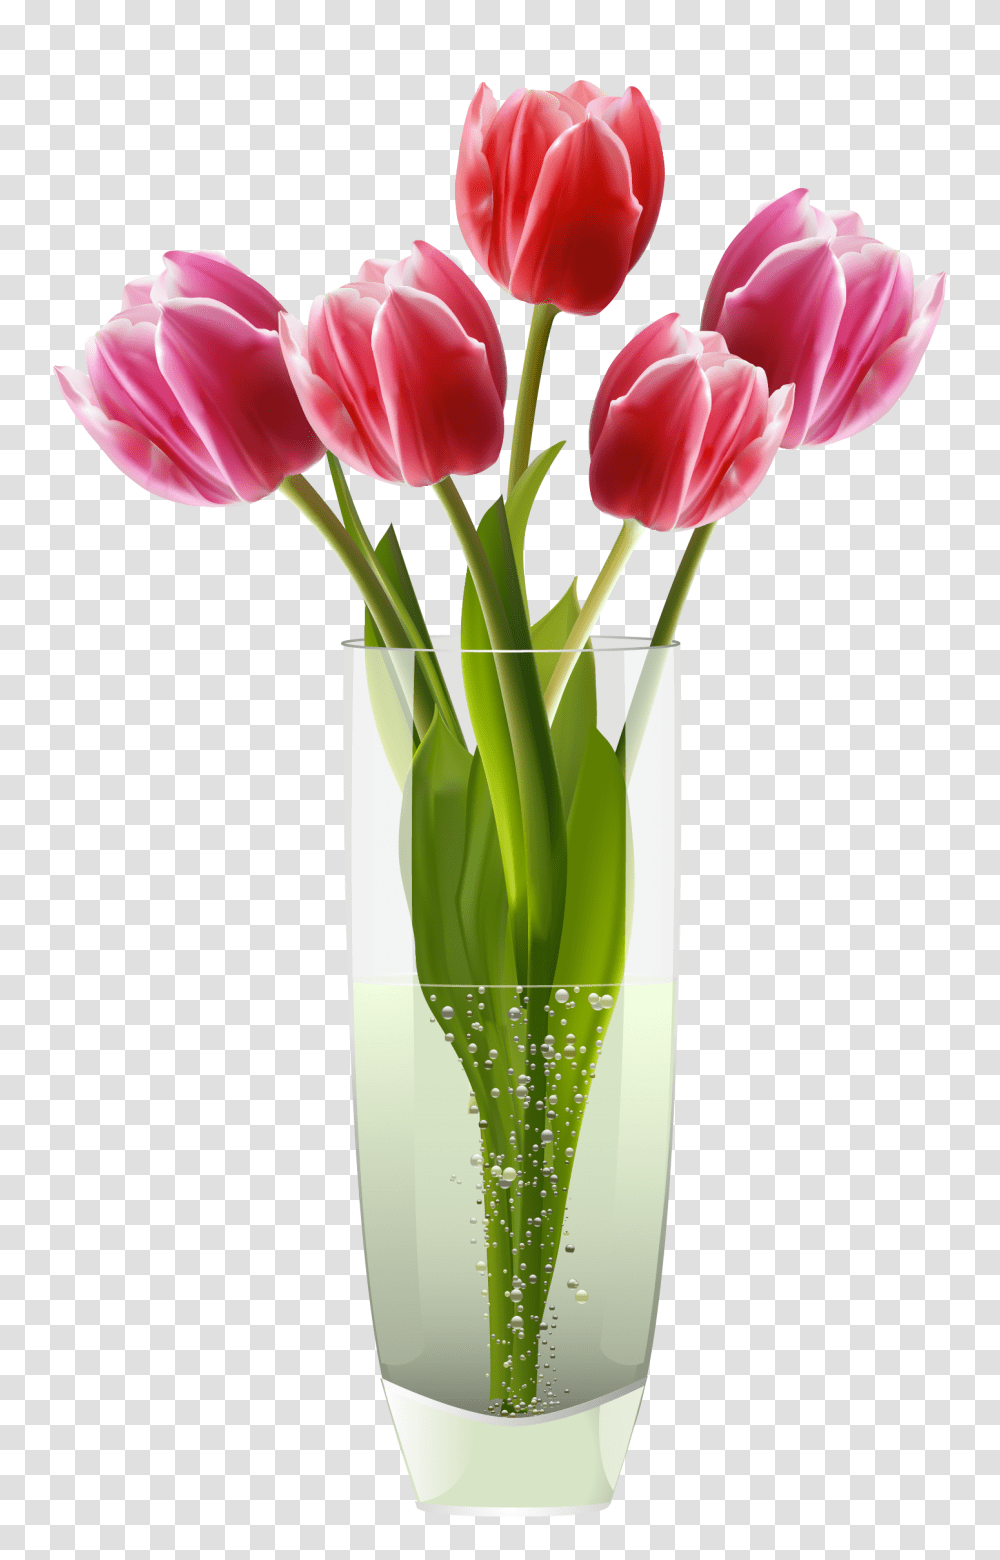 Surprising Useful Ideas Vases Vintage Plants Large Wooden Vases, Flower, Blossom, Tulip, Flower Arrangement Transparent Png